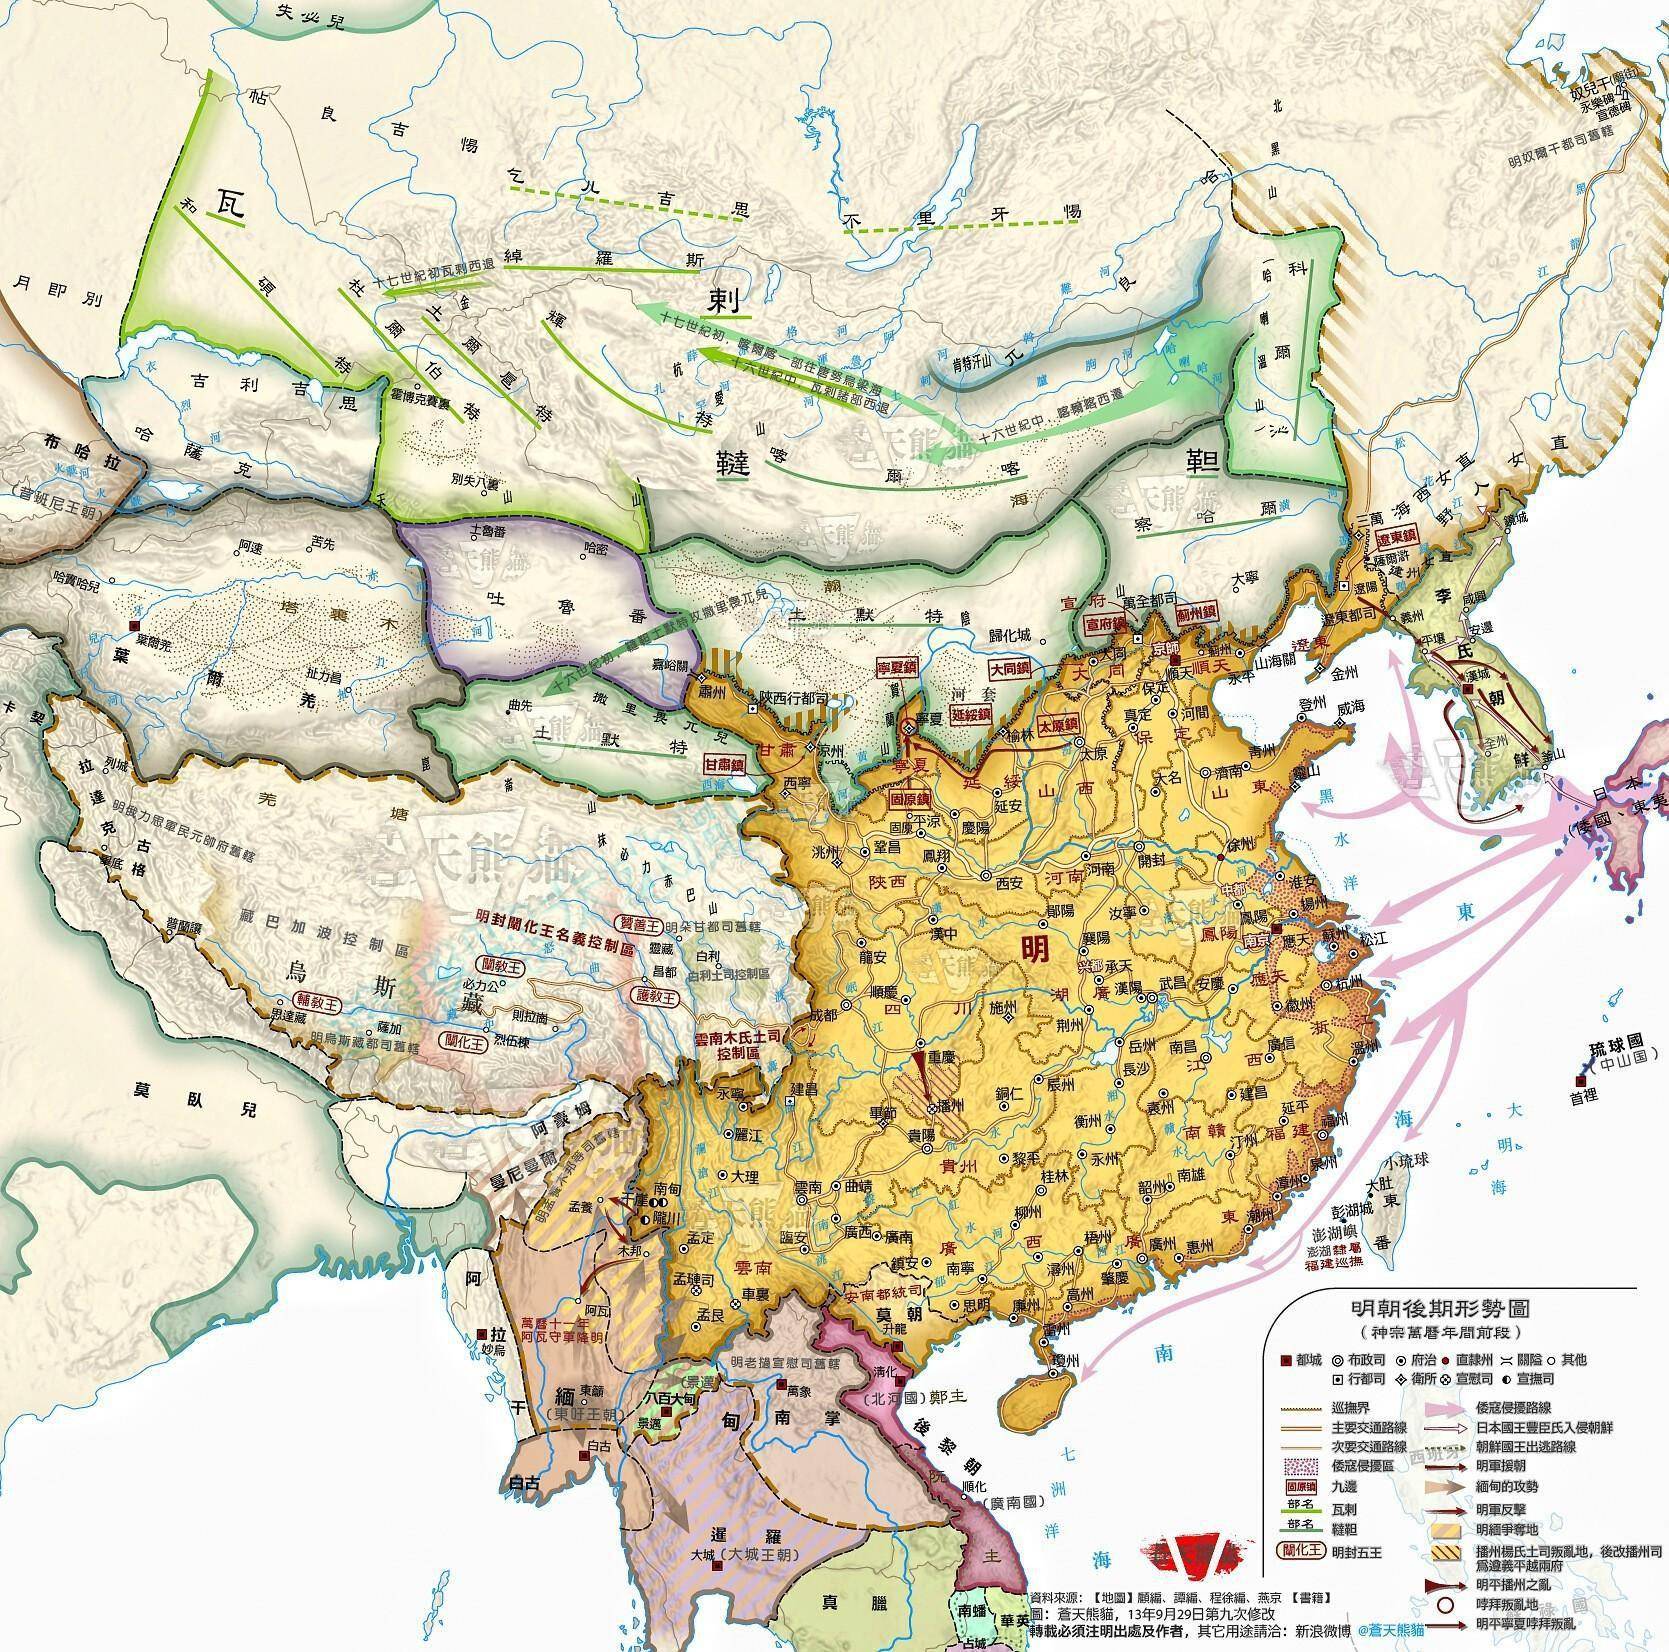 说到清王朝的强盛,主要体现在,清朝统治下的中国疆域版图是最大的